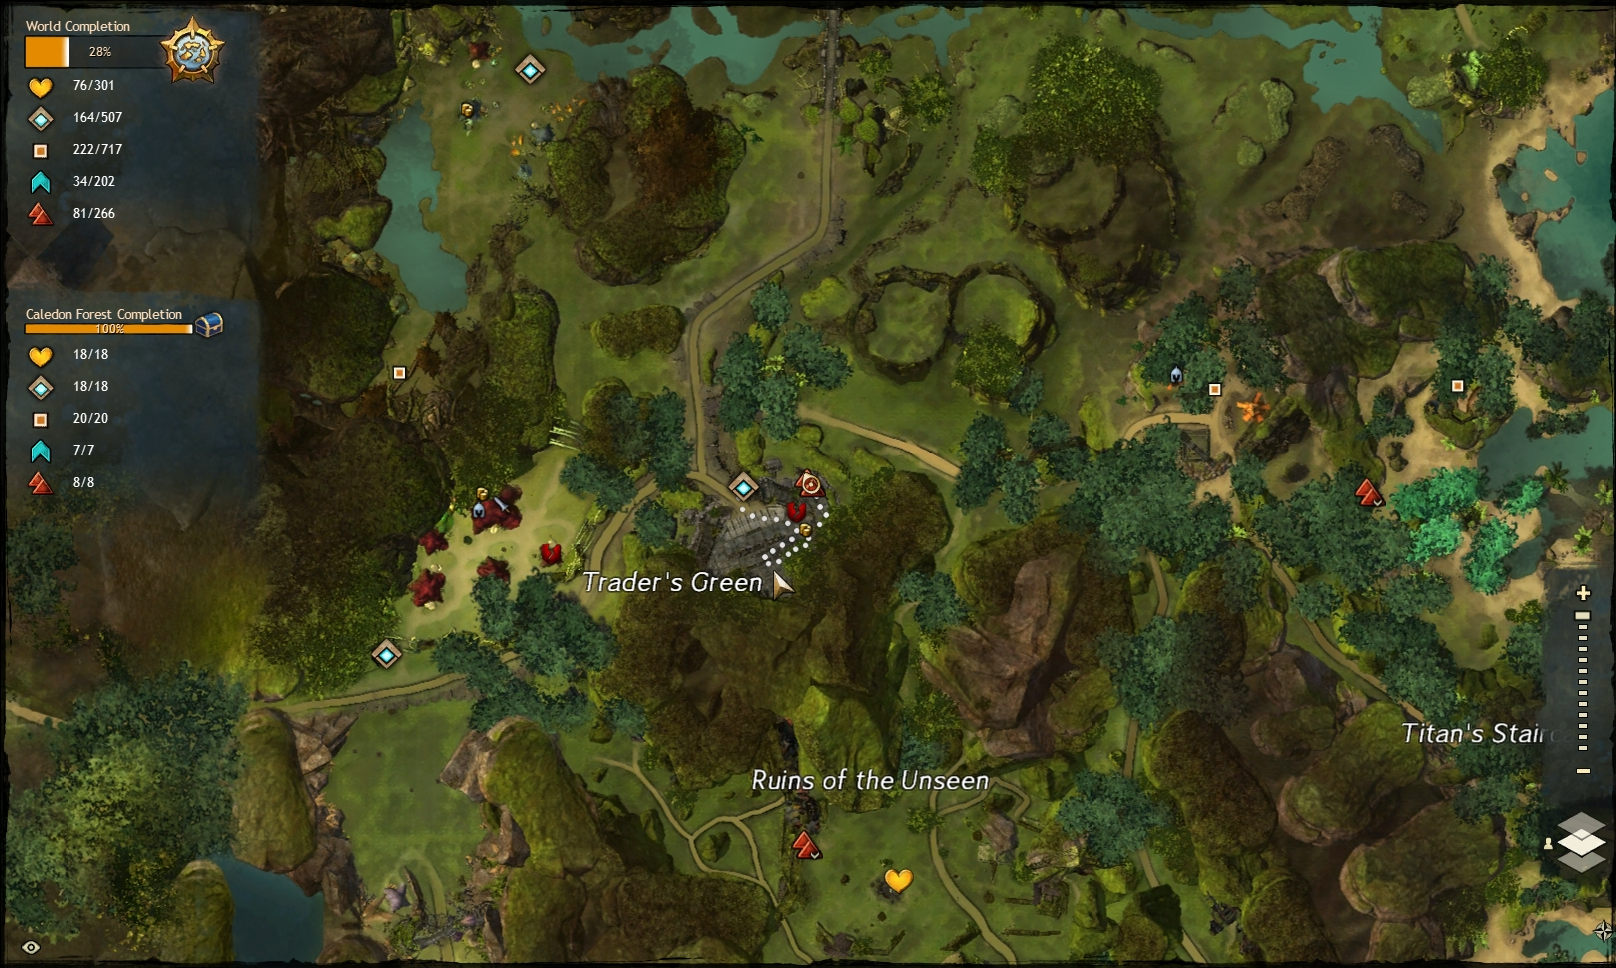 Guild Wars 2 - Vistas in Caledon Forest - 07 Trader's Green